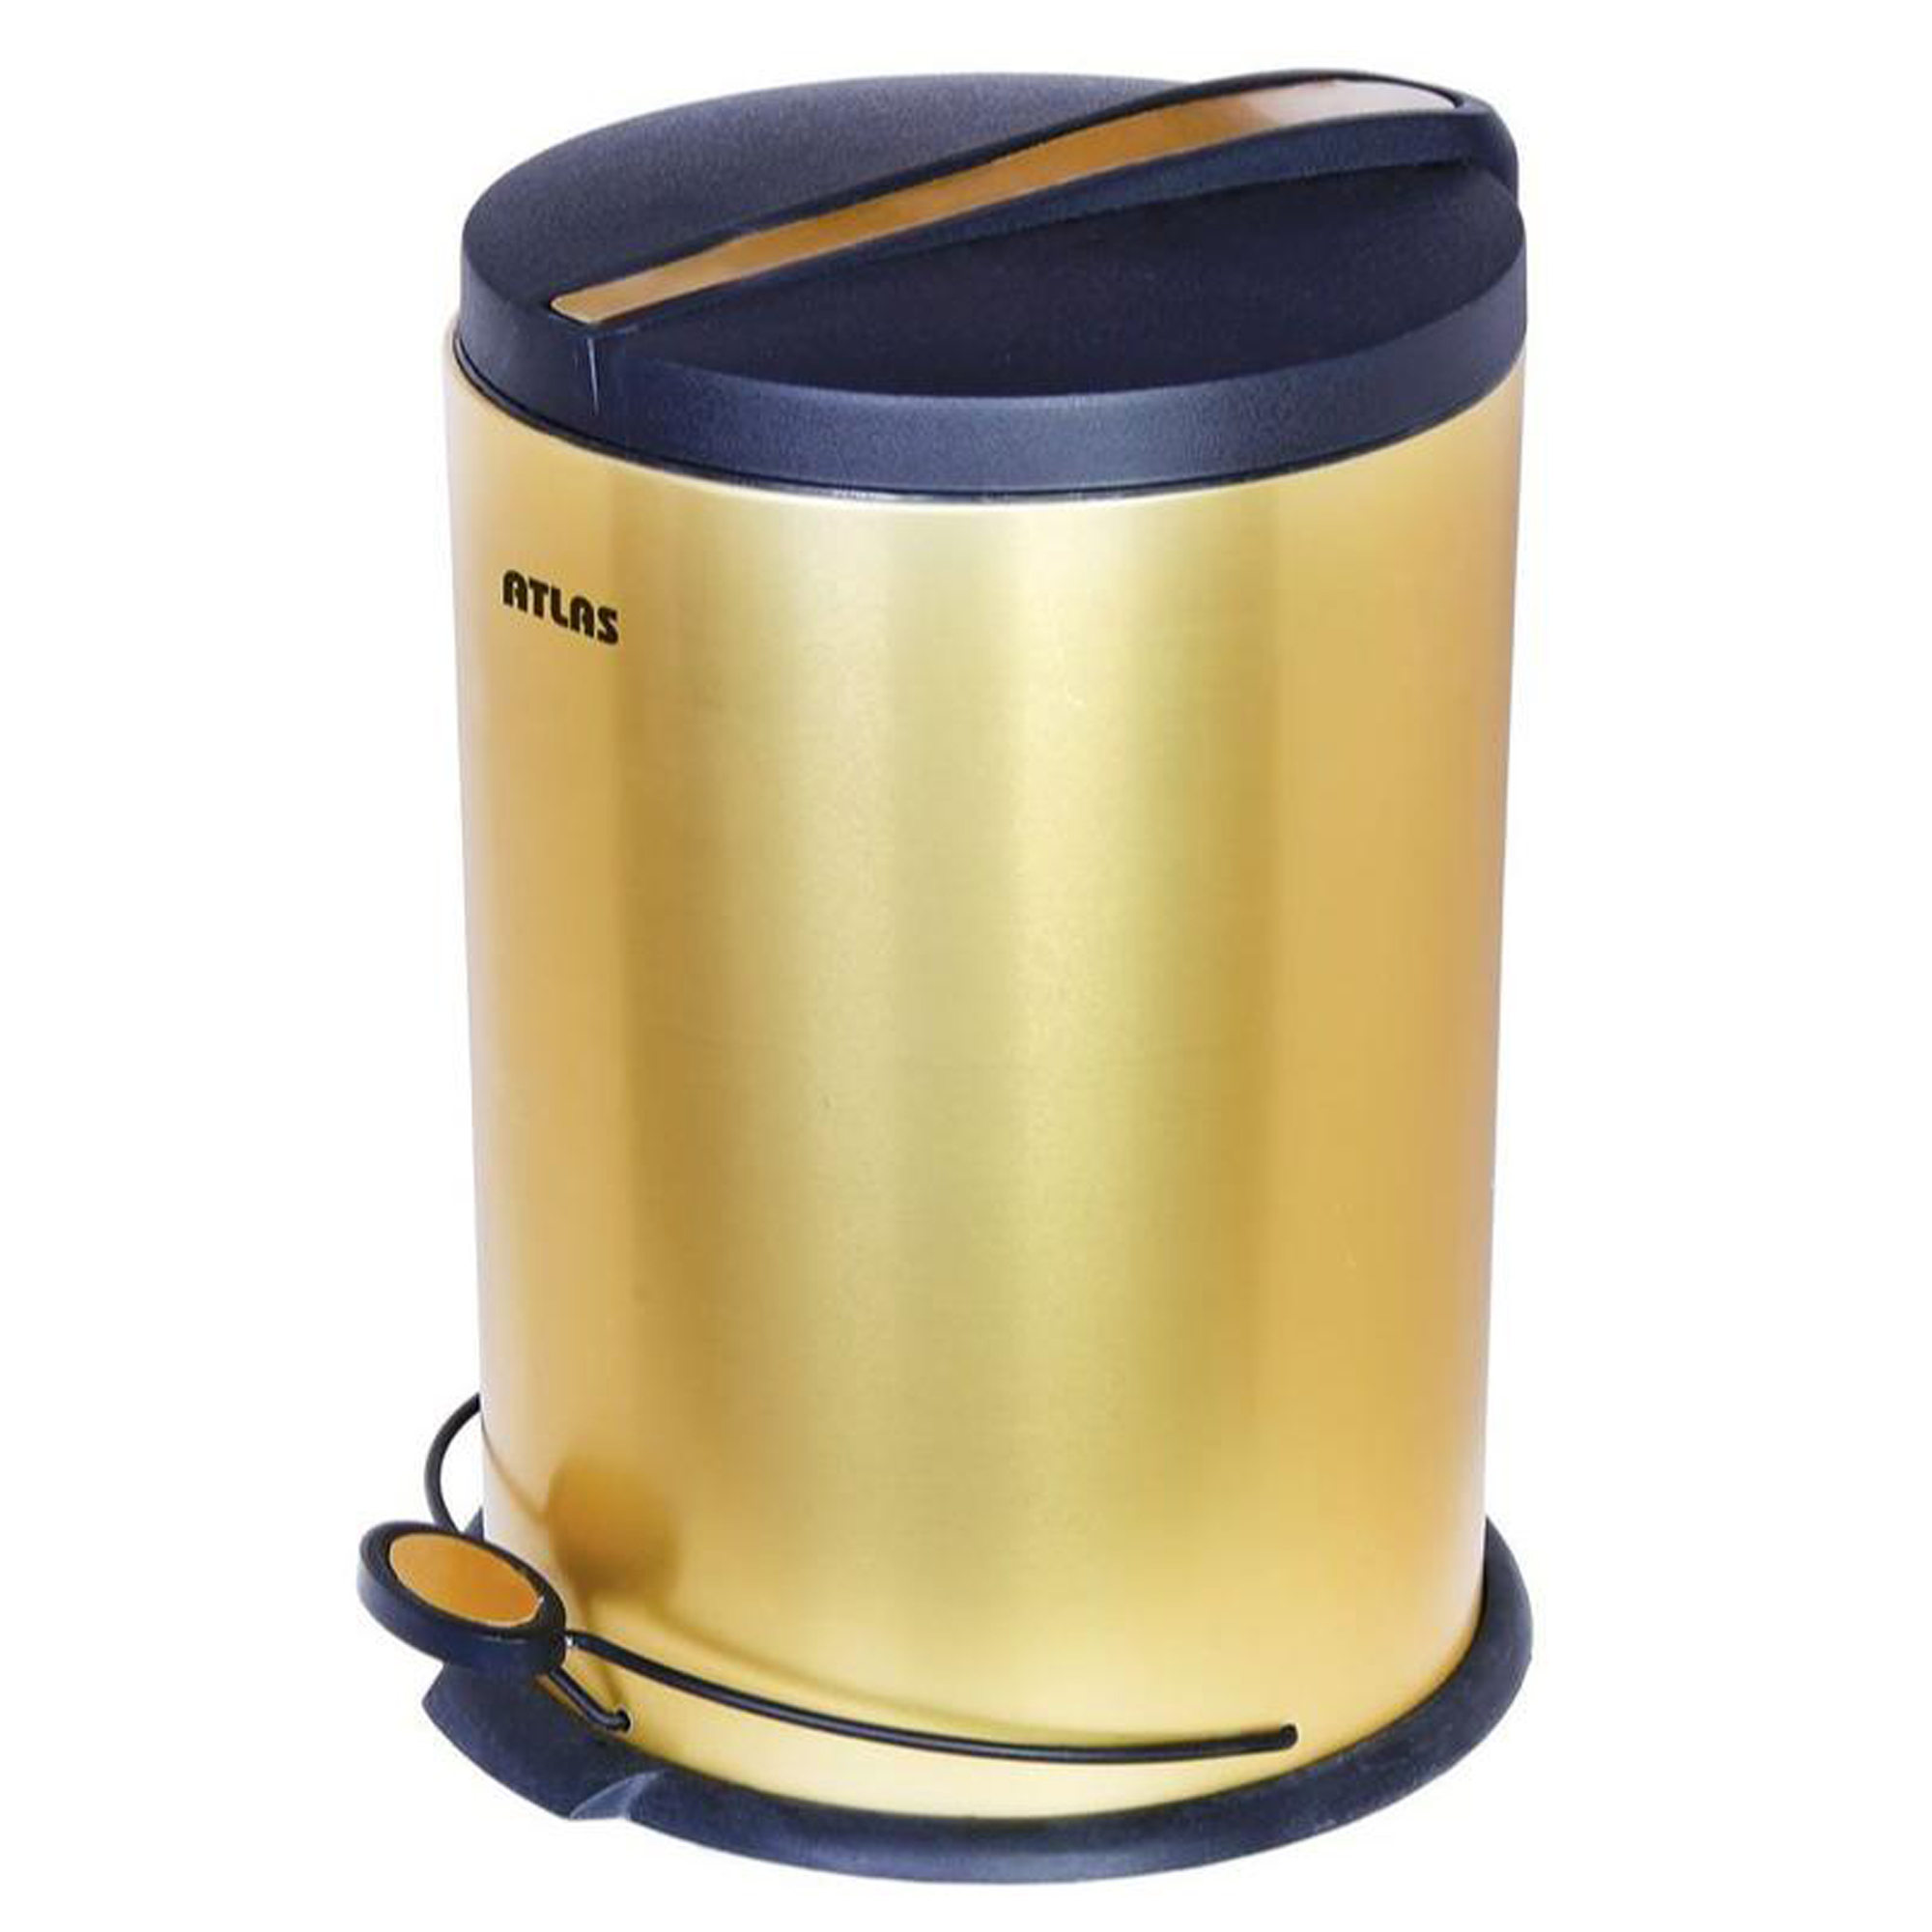 سطل زباله اطلس مدل پدالی کد 20 گنجایش 20 لیتر